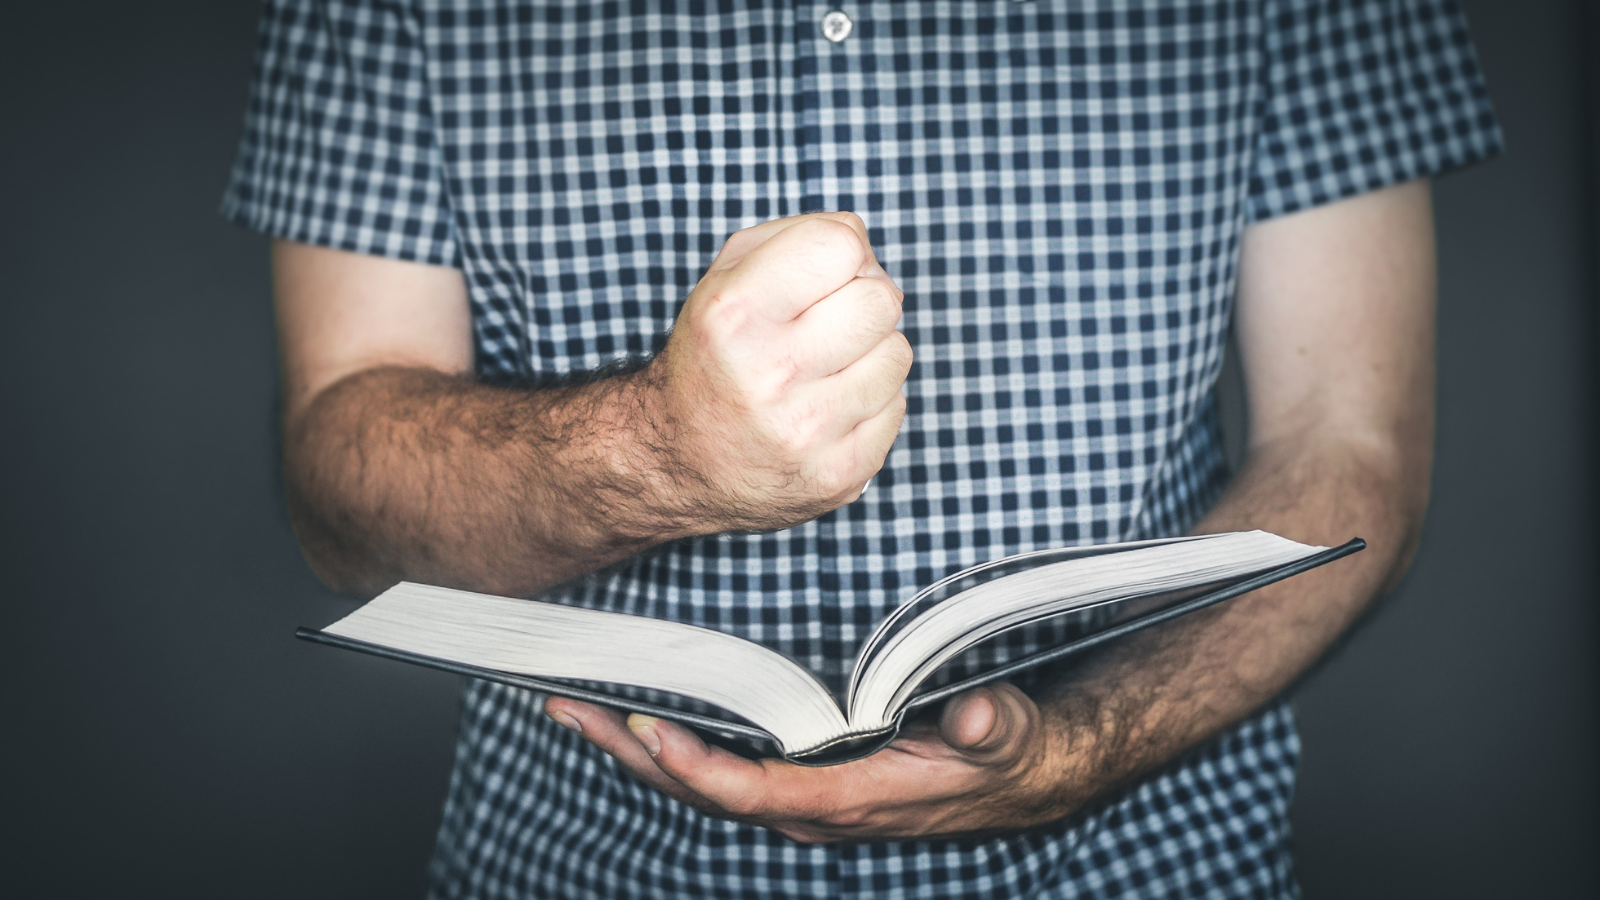 A man holding a fist above an open bible.